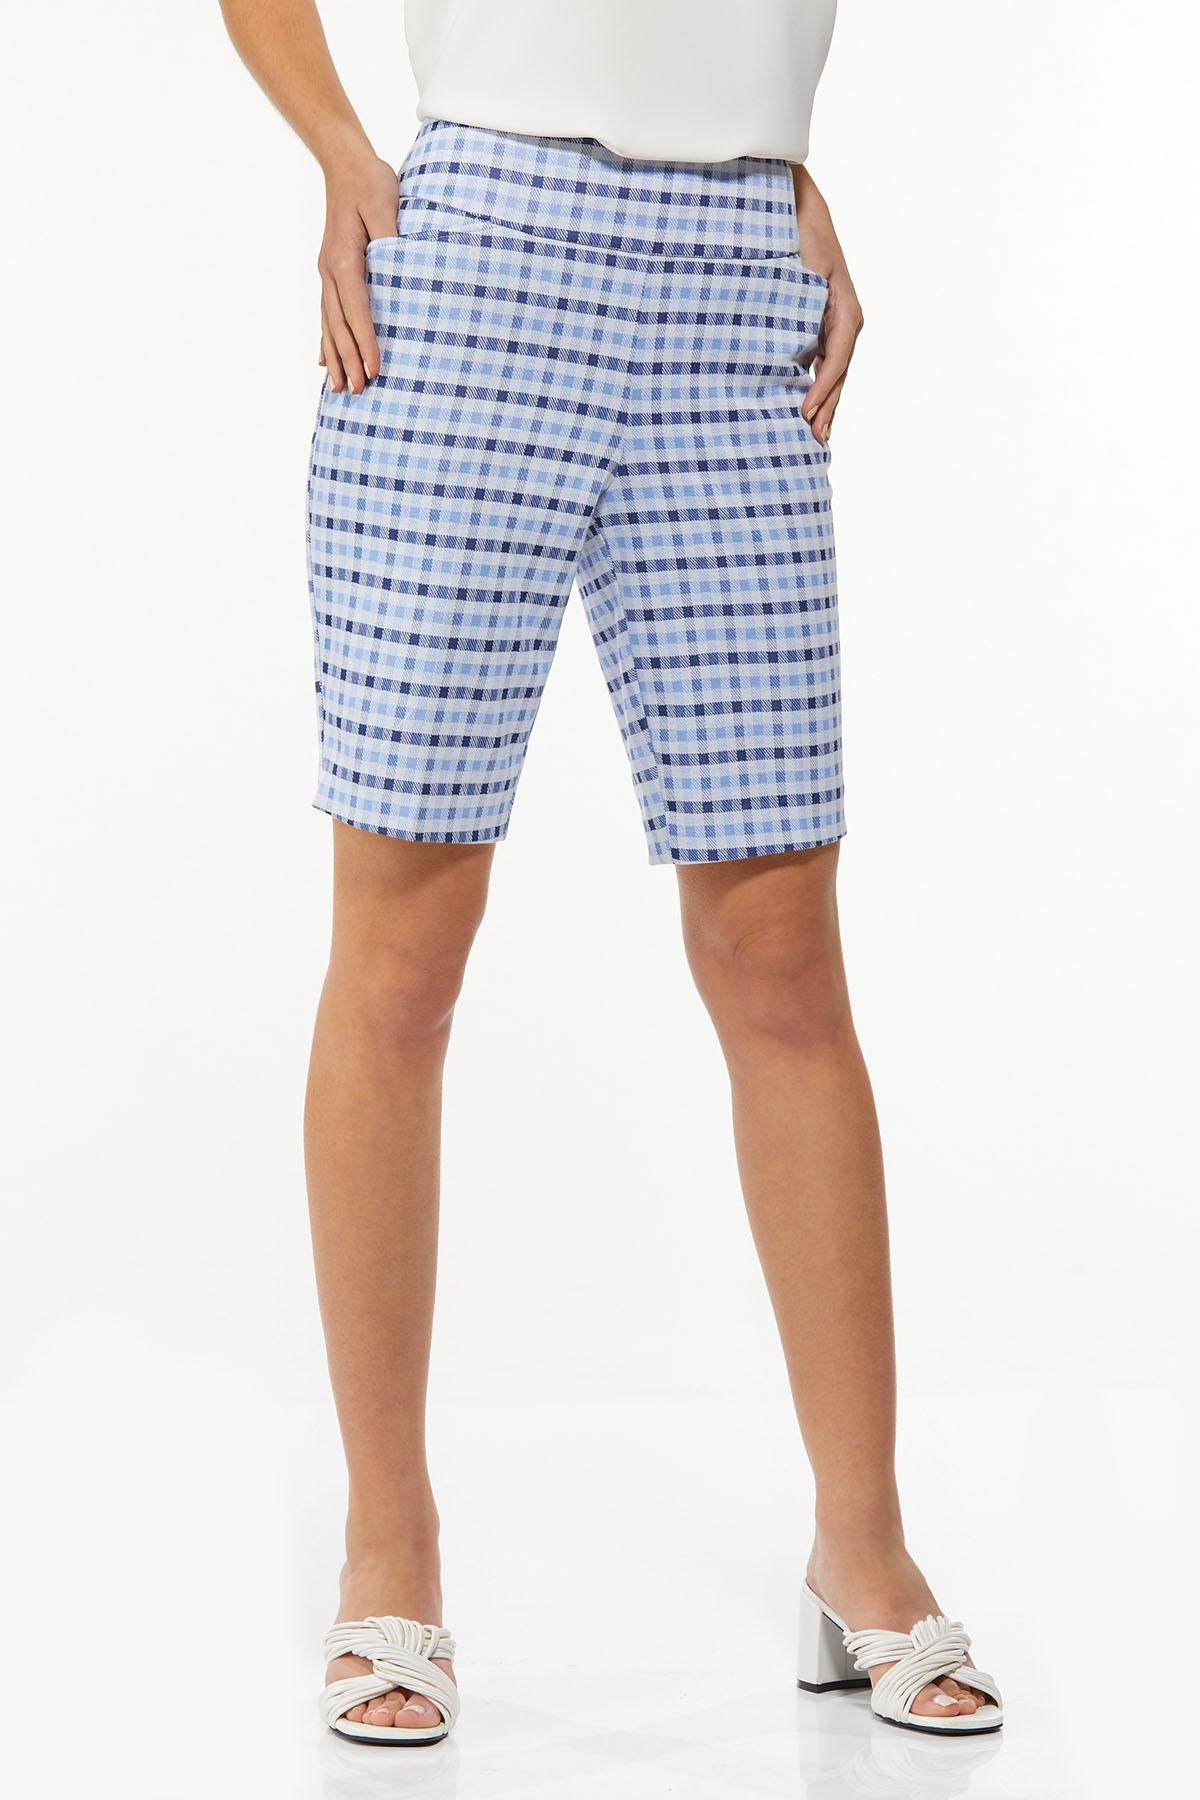 Blue Check Bermuda Shorts